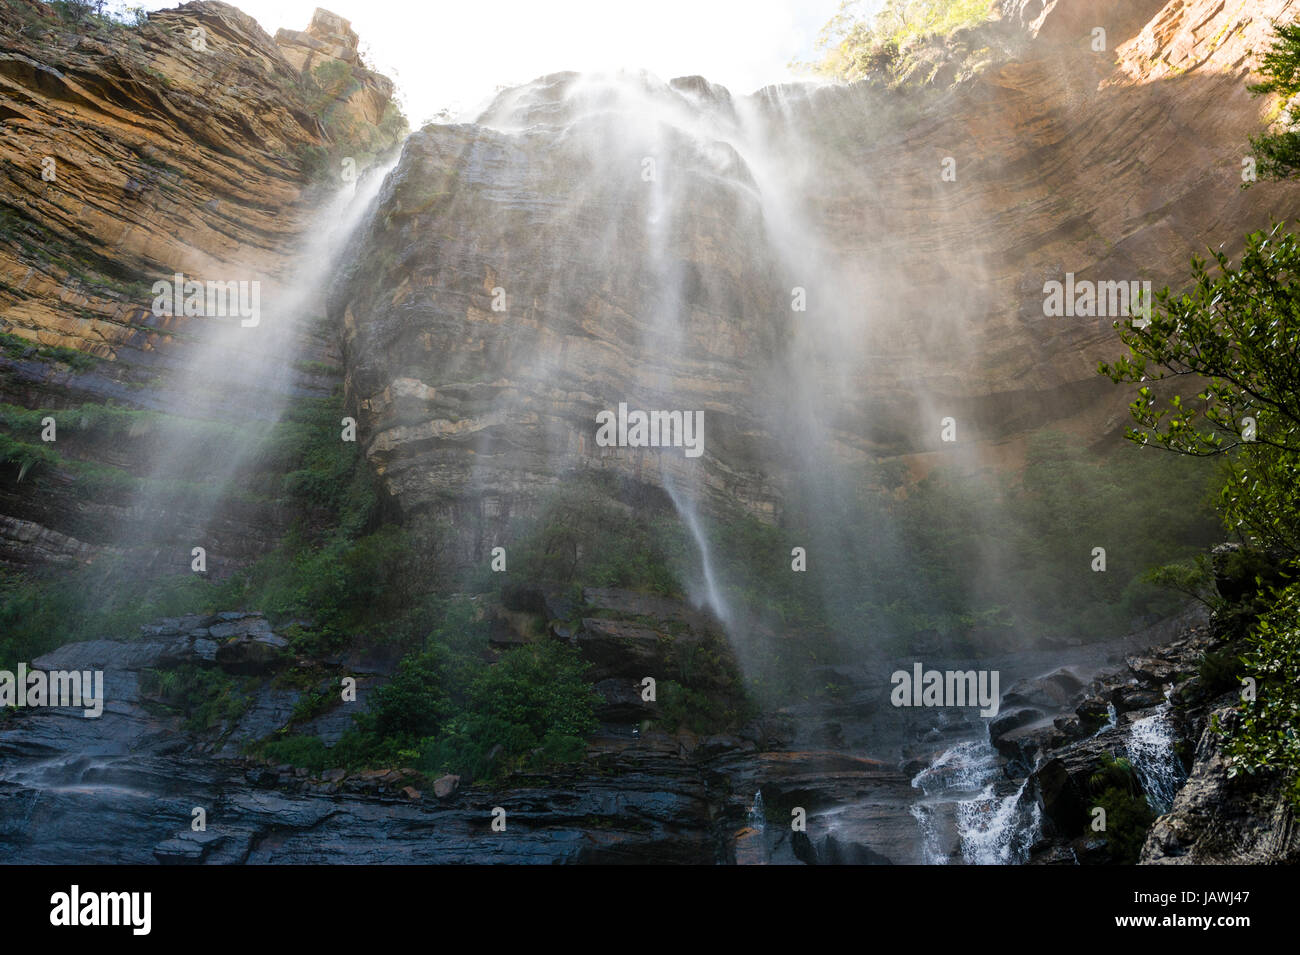 Una cortina de niebla y cascadas de agua de una cascada en un acantilado de piedra arenisca. Foto de stock